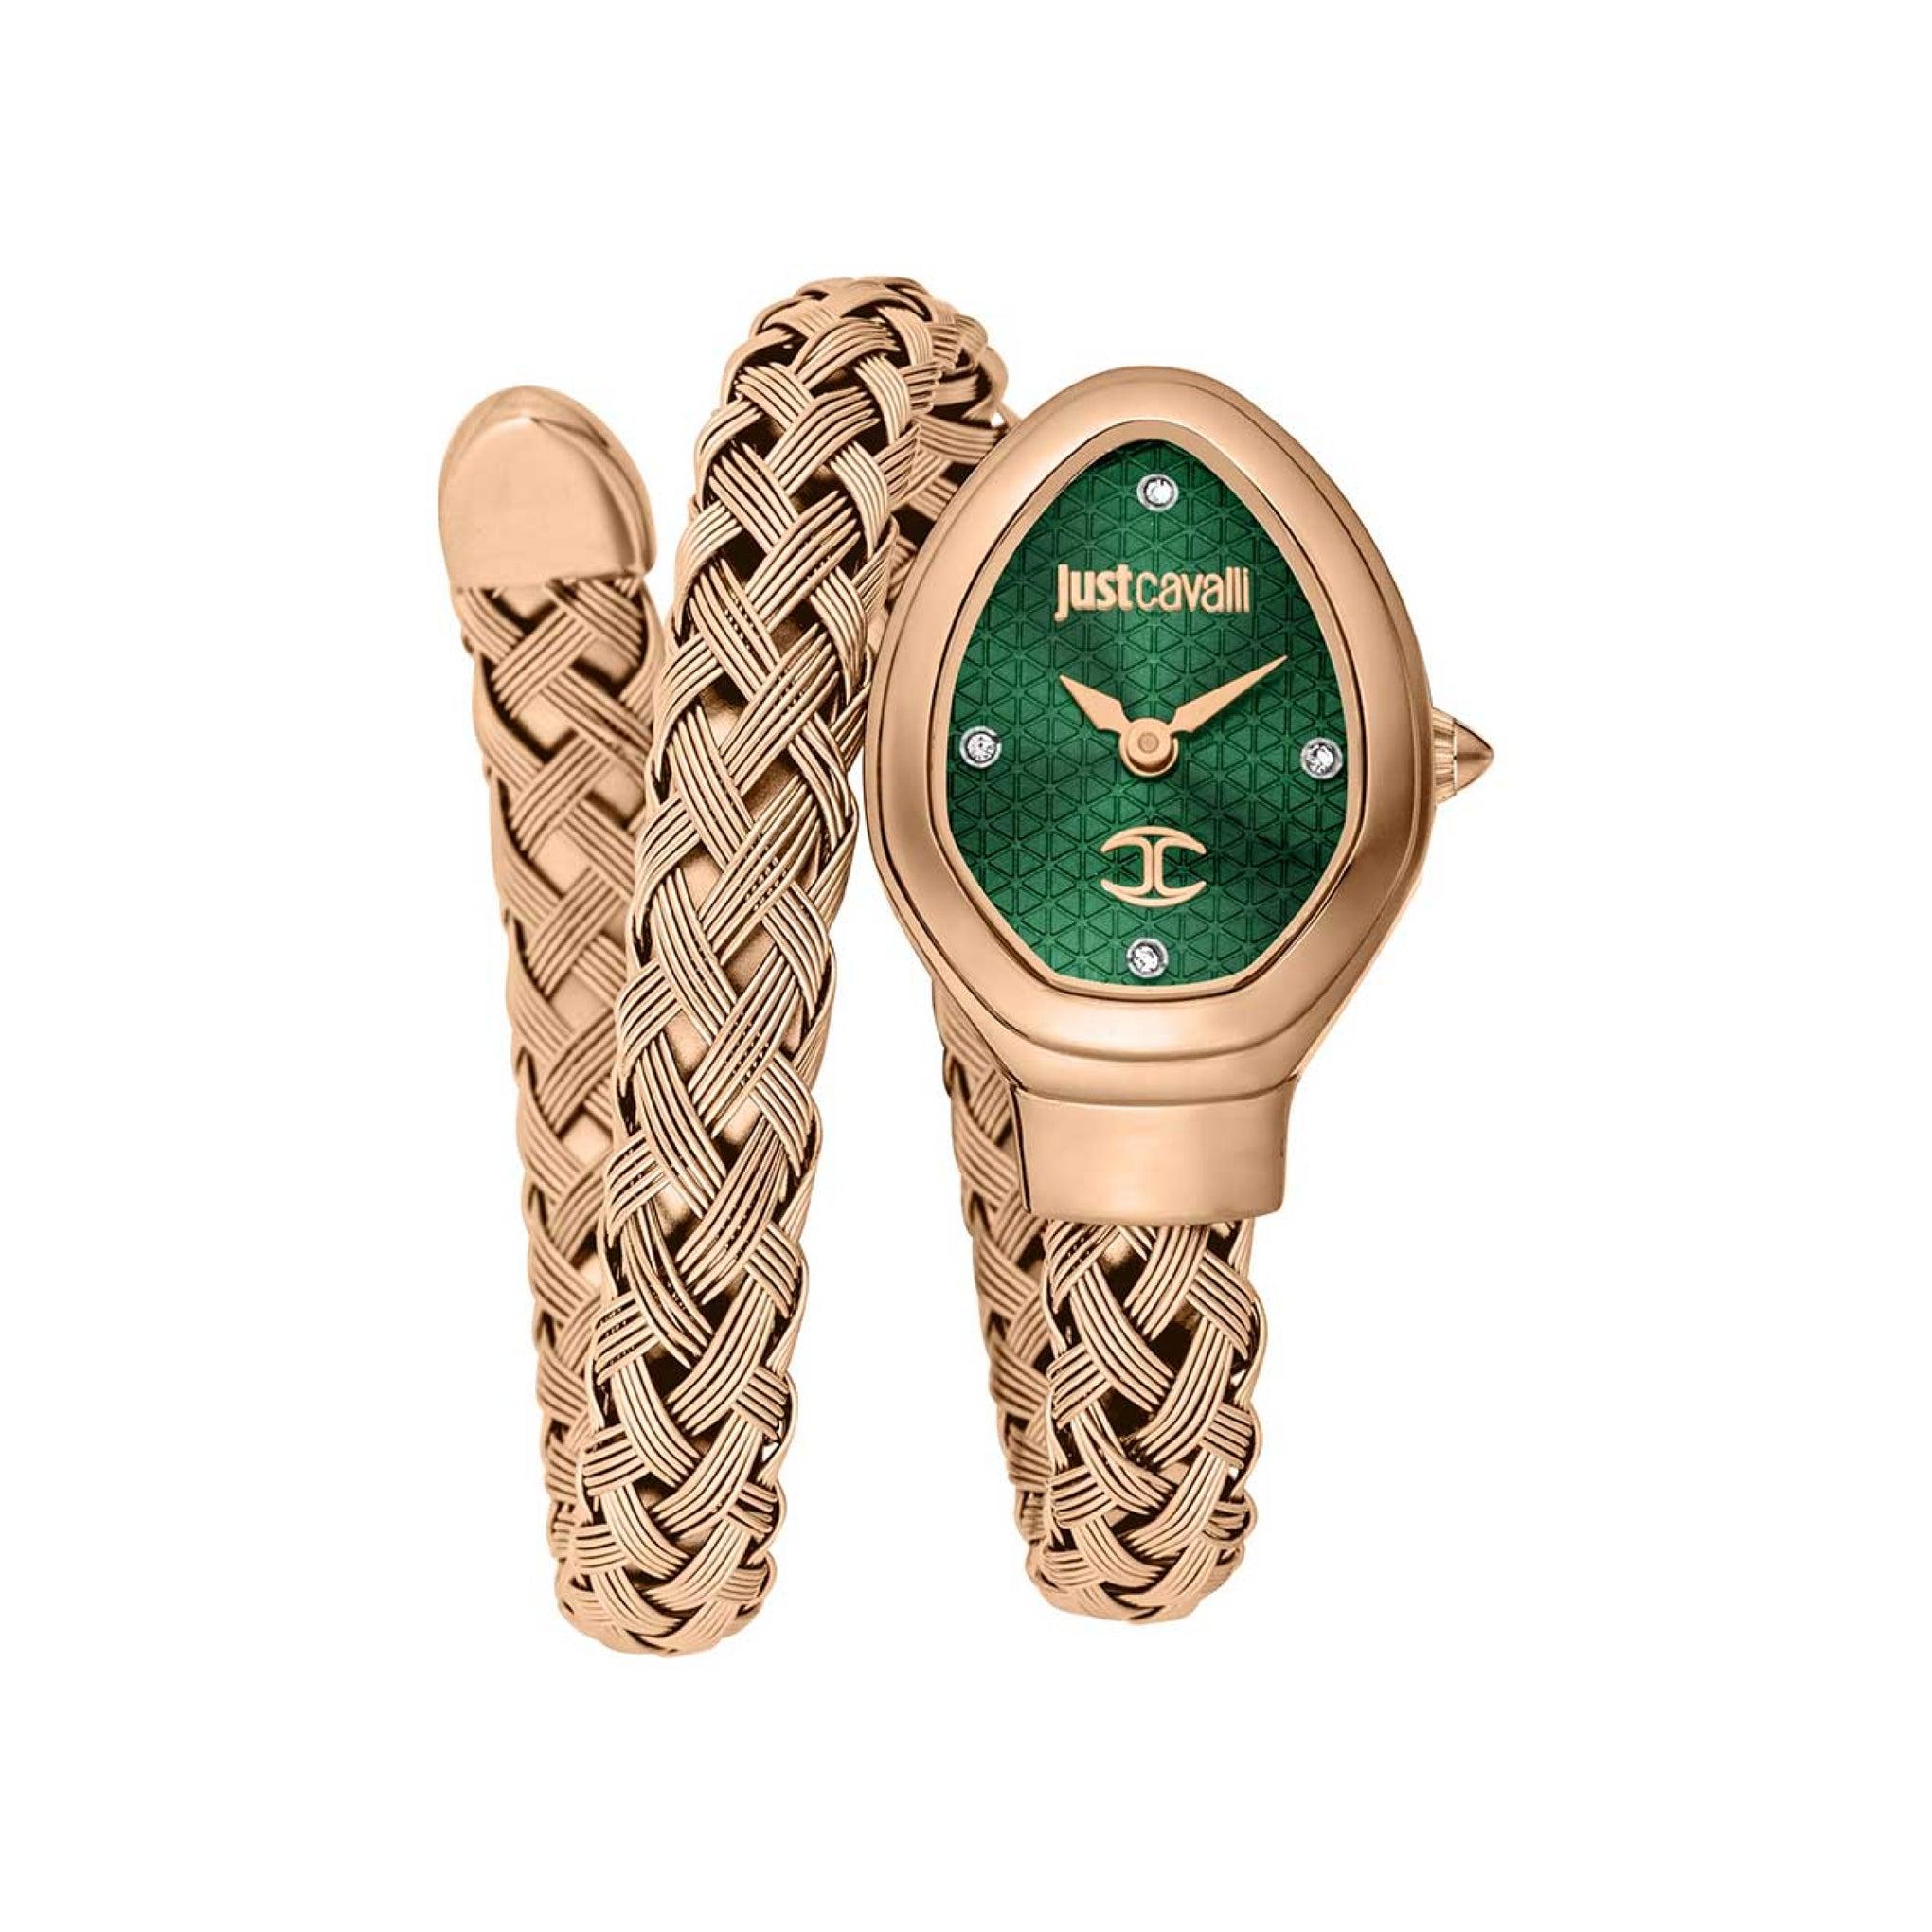 ساعة يد نسائية بشكل ثعبان - ذهبية - بحزام معدني مقاوم للصدأ جست كافالي Just Cavalli Women's Novara Stainless Steel Wrist Watch